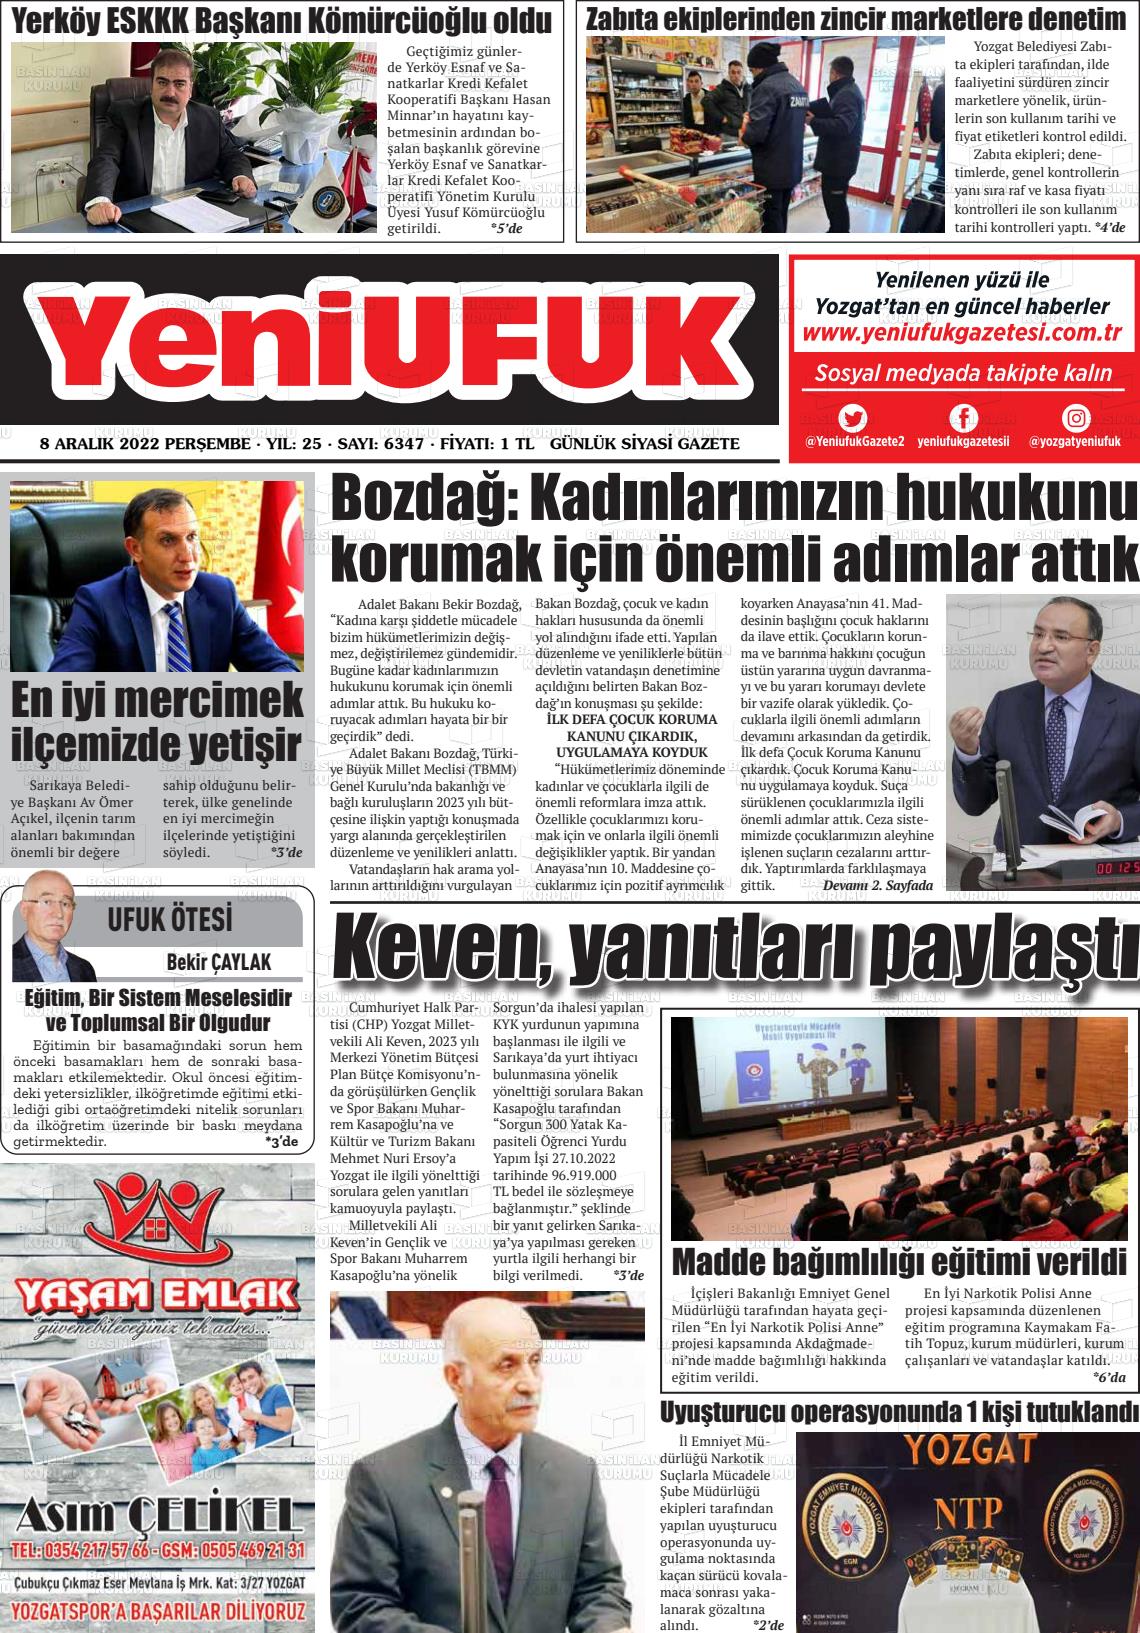 08 Aralık 2022 Yozgat Yeni Ufuk Gazete Manşeti